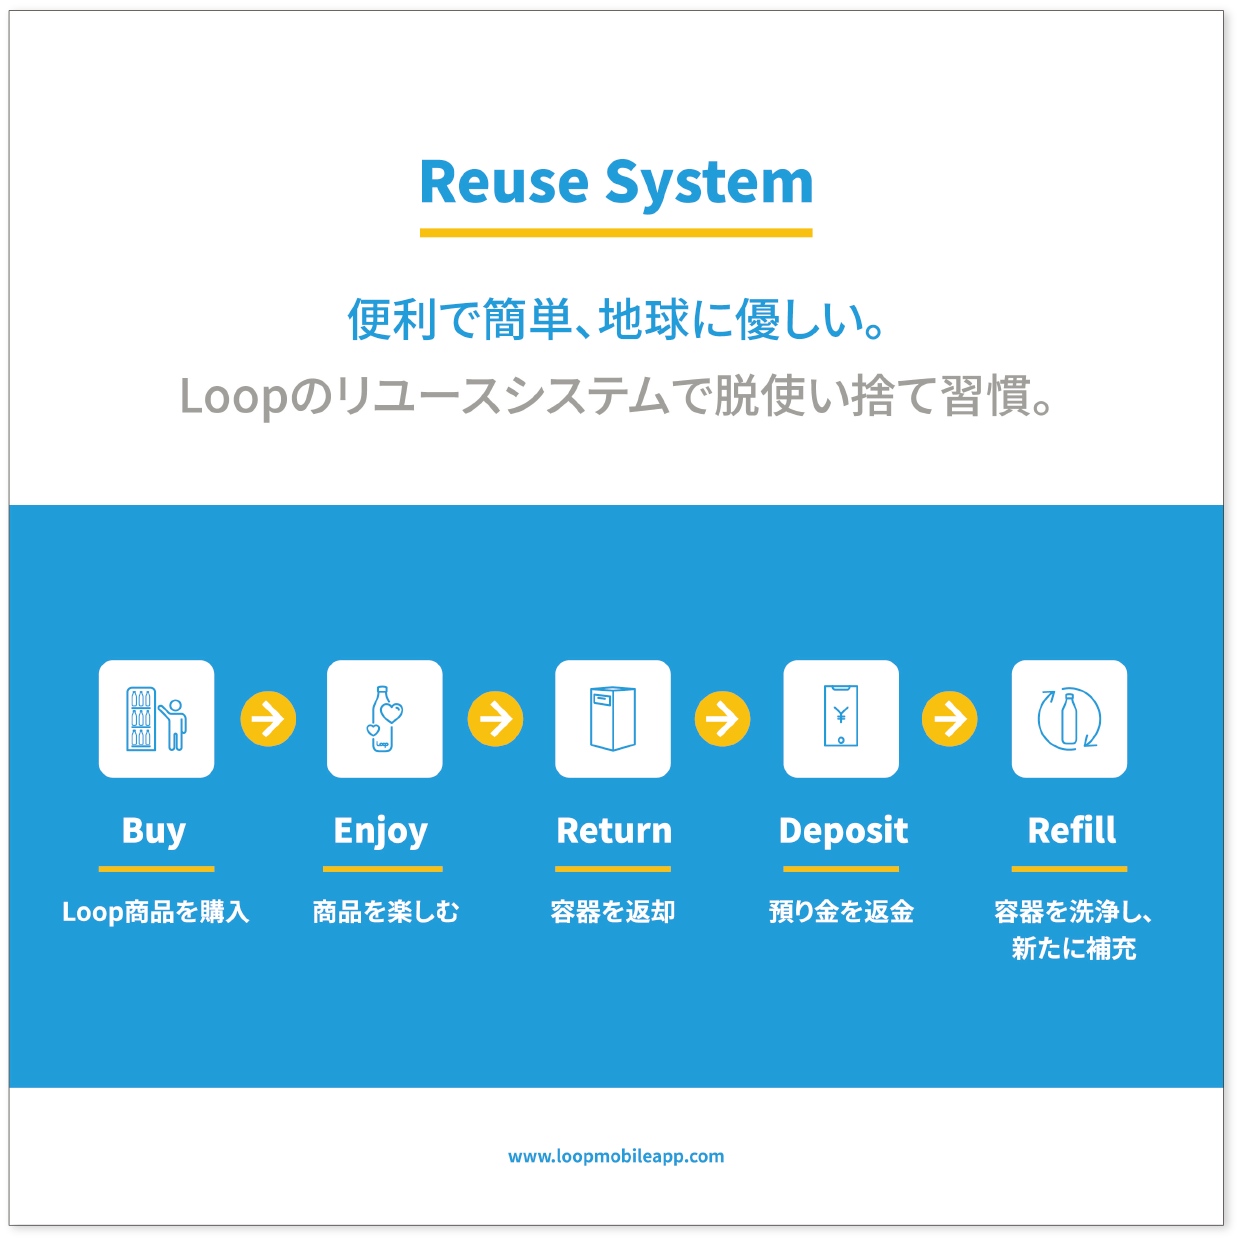 Reuse System 便利で簡単、地球に優しい。Loopのリユースシステムで脱使い捨て習慣。